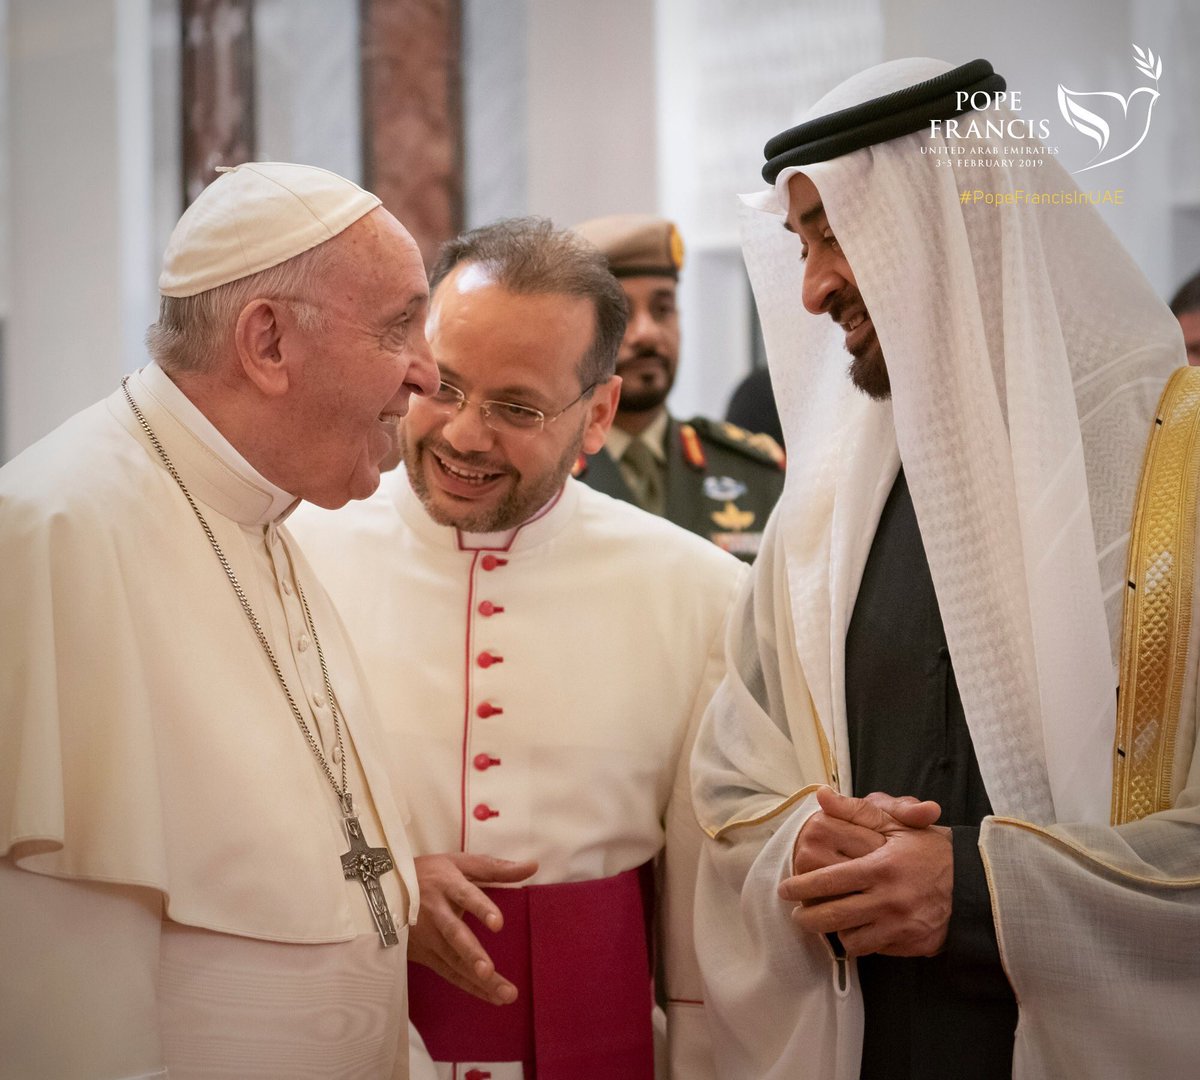 CÁI NHÌN BÊN TRONG CÁC TIỂU VƯƠNG QUỐC Ả-RẬP: Chuyến đi đầu tiên của một Giáo hoàng đến Bán đảo Ả-rập đầy những khởi đầu lịch sử, Zenit có mặt trên chuyến bay giáo hoàng